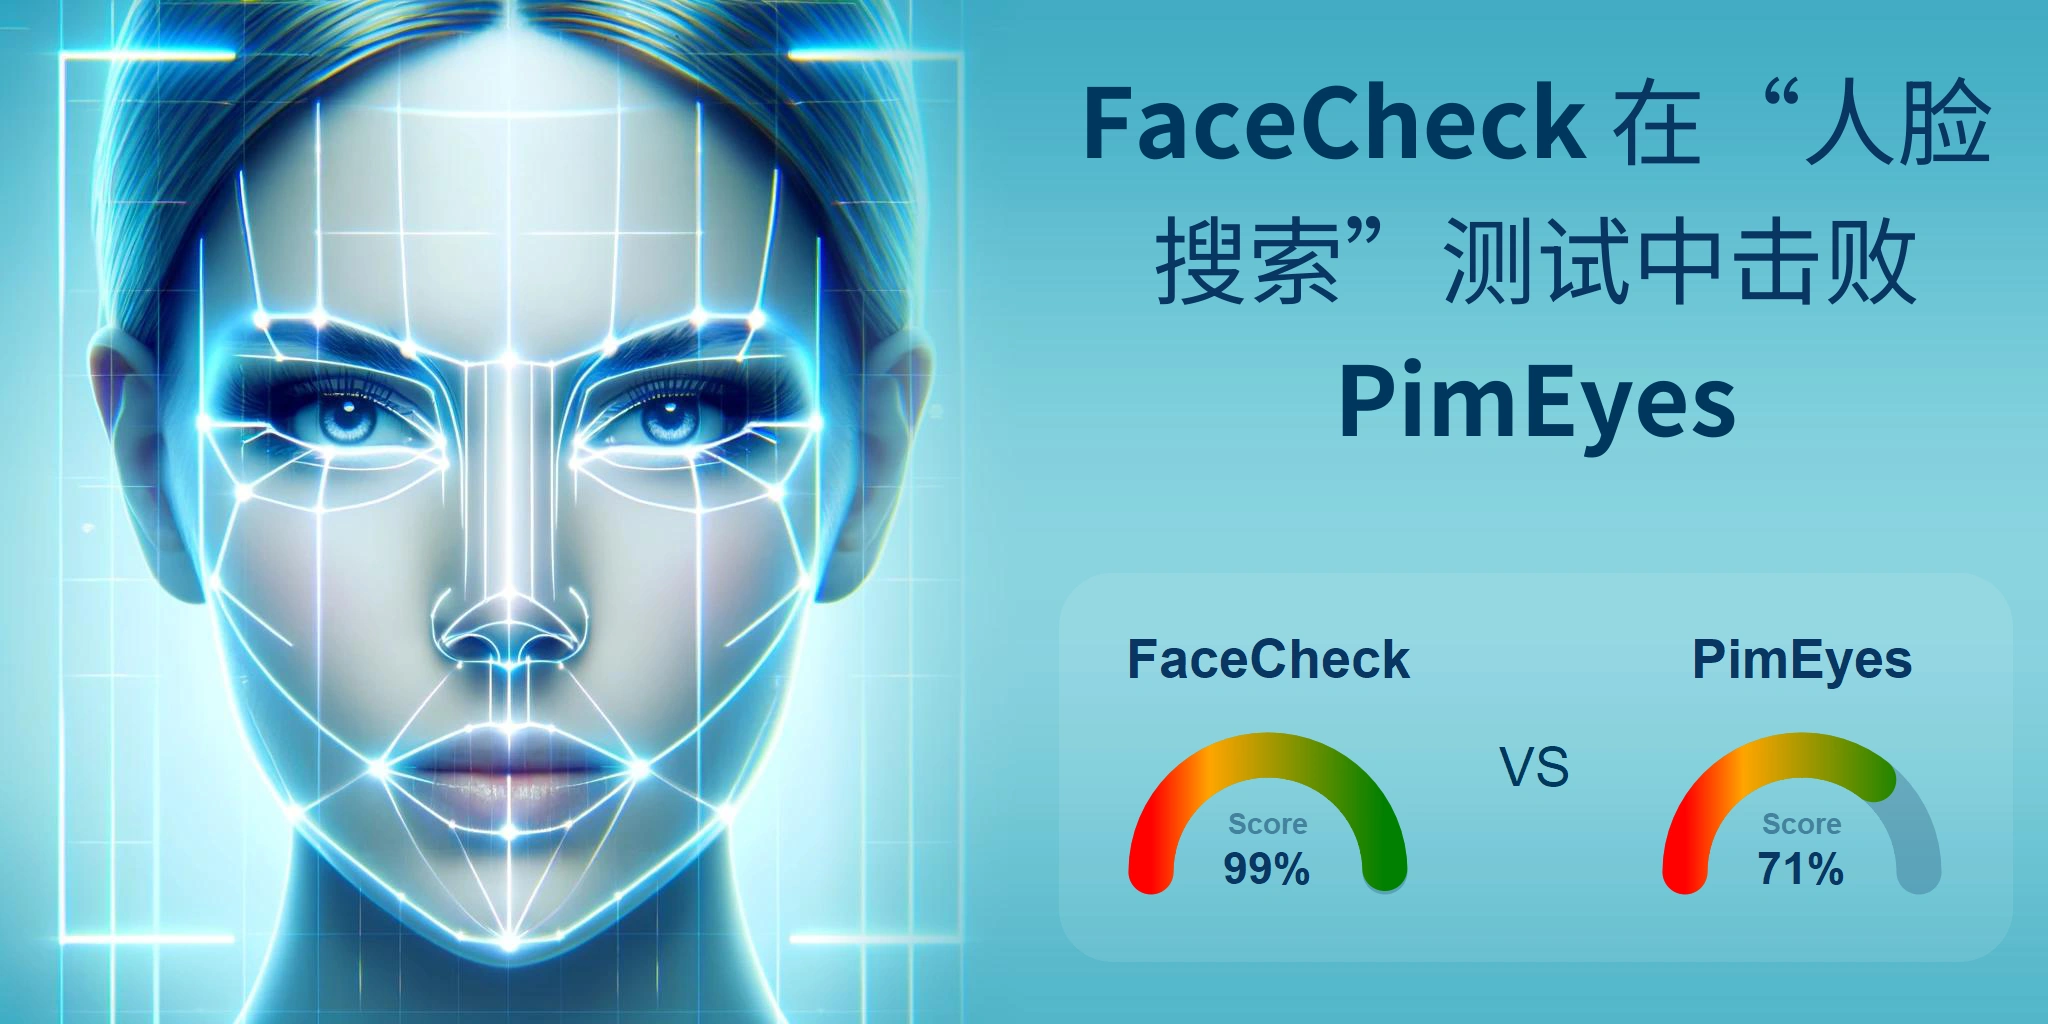 哪一个更适合人脸搜索：<br>PimEyes 还是 FaceCheck？